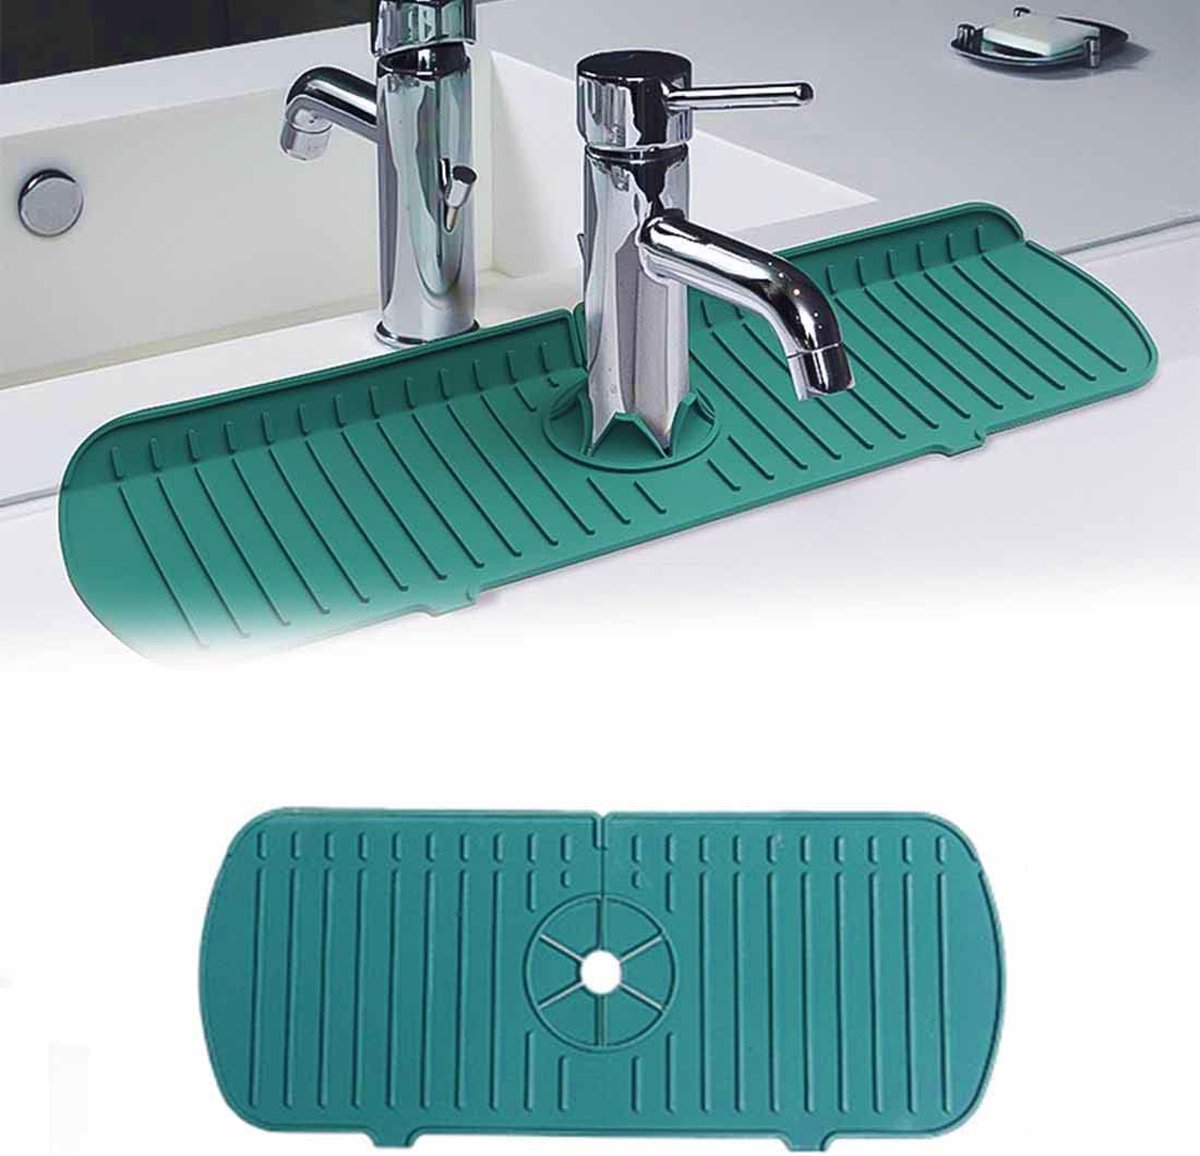 Siliconen kraanmat gootsteen splash guard keukenarmatuur afvoermat waterkraan handvat druppelvanger opvouwbare mat voor badkamer keuken en bar